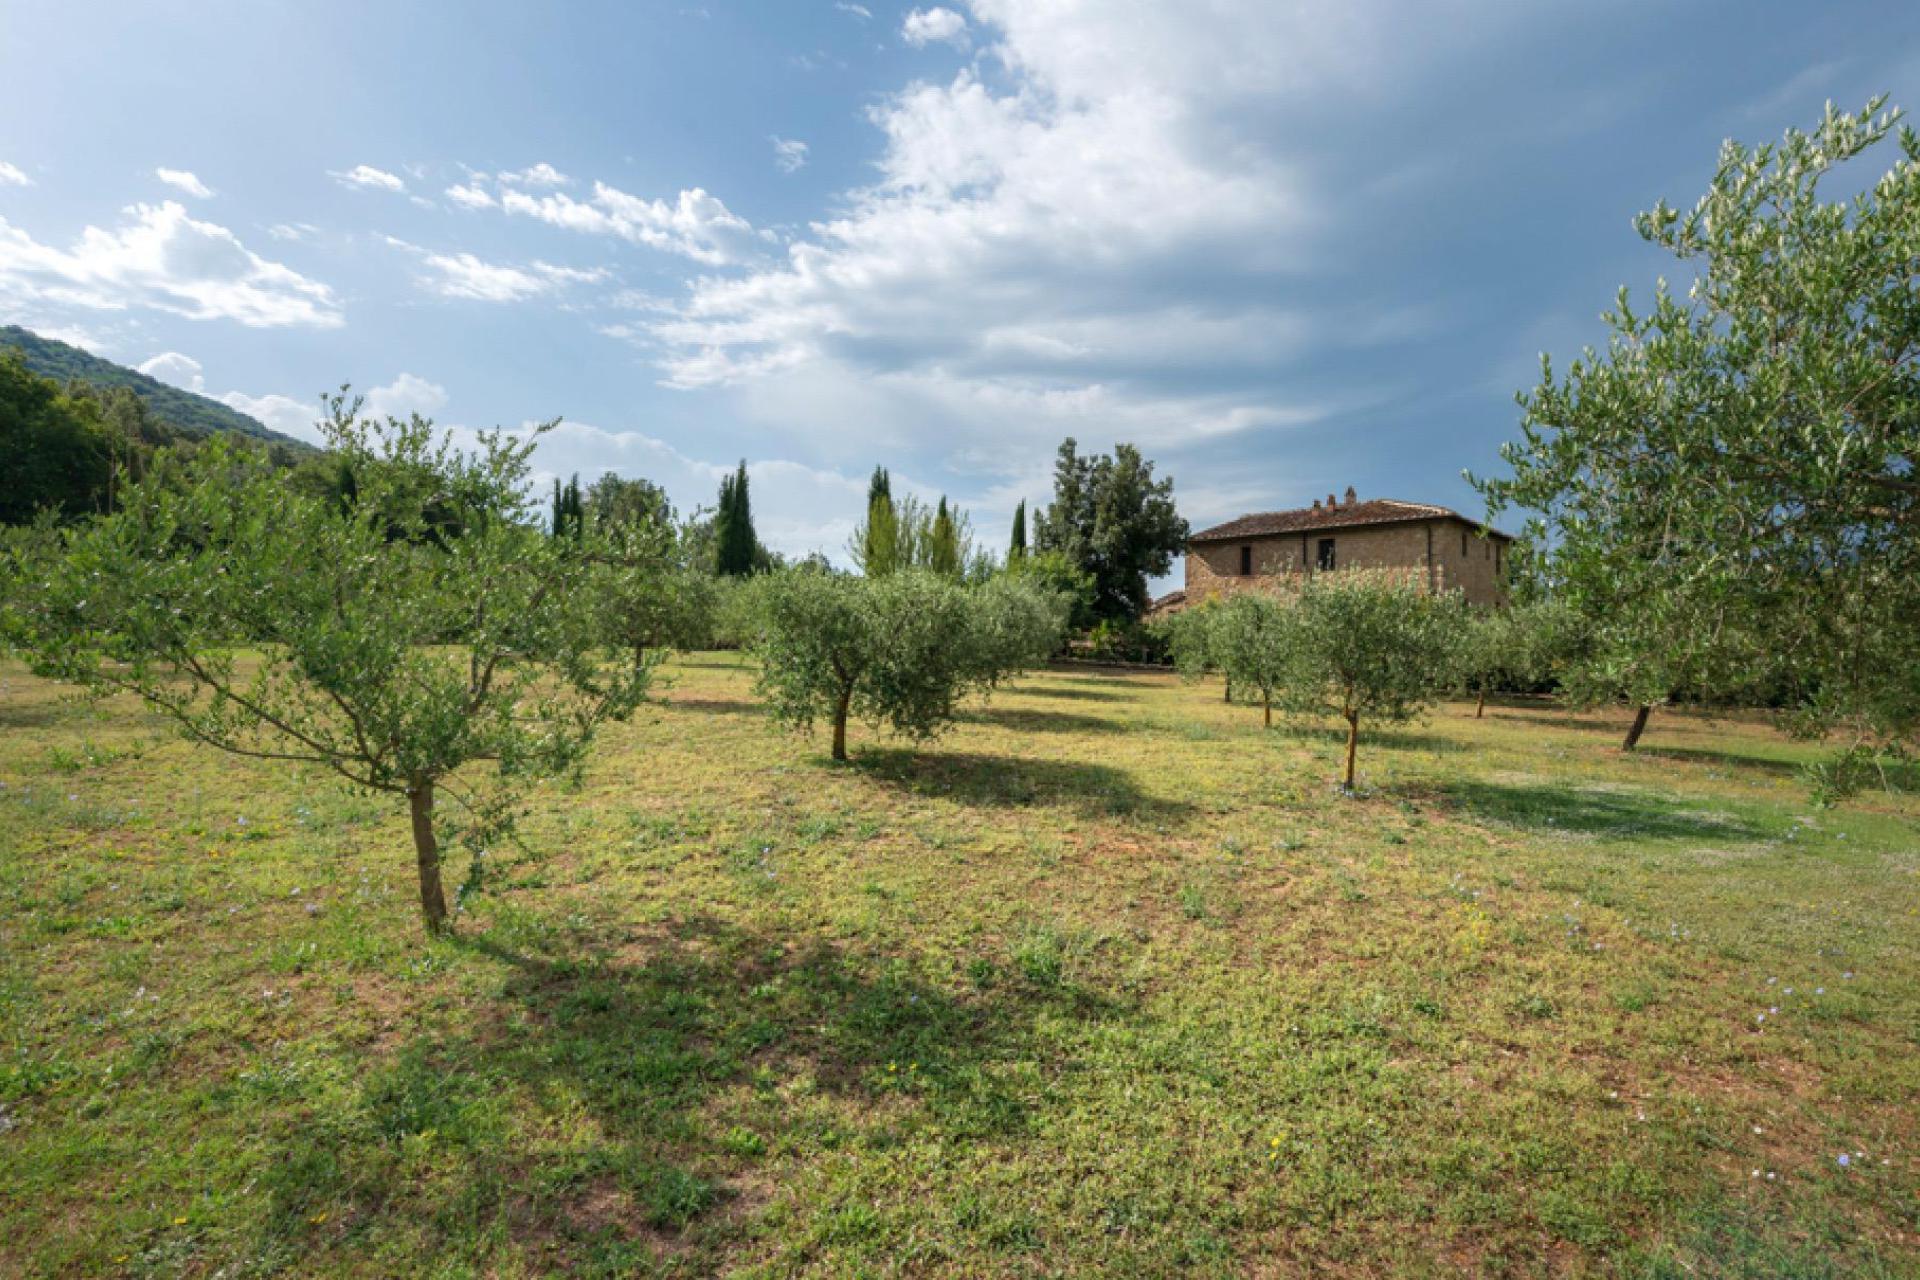 Agriturismo voor liefhebbers van natuur en comfort In Toscane